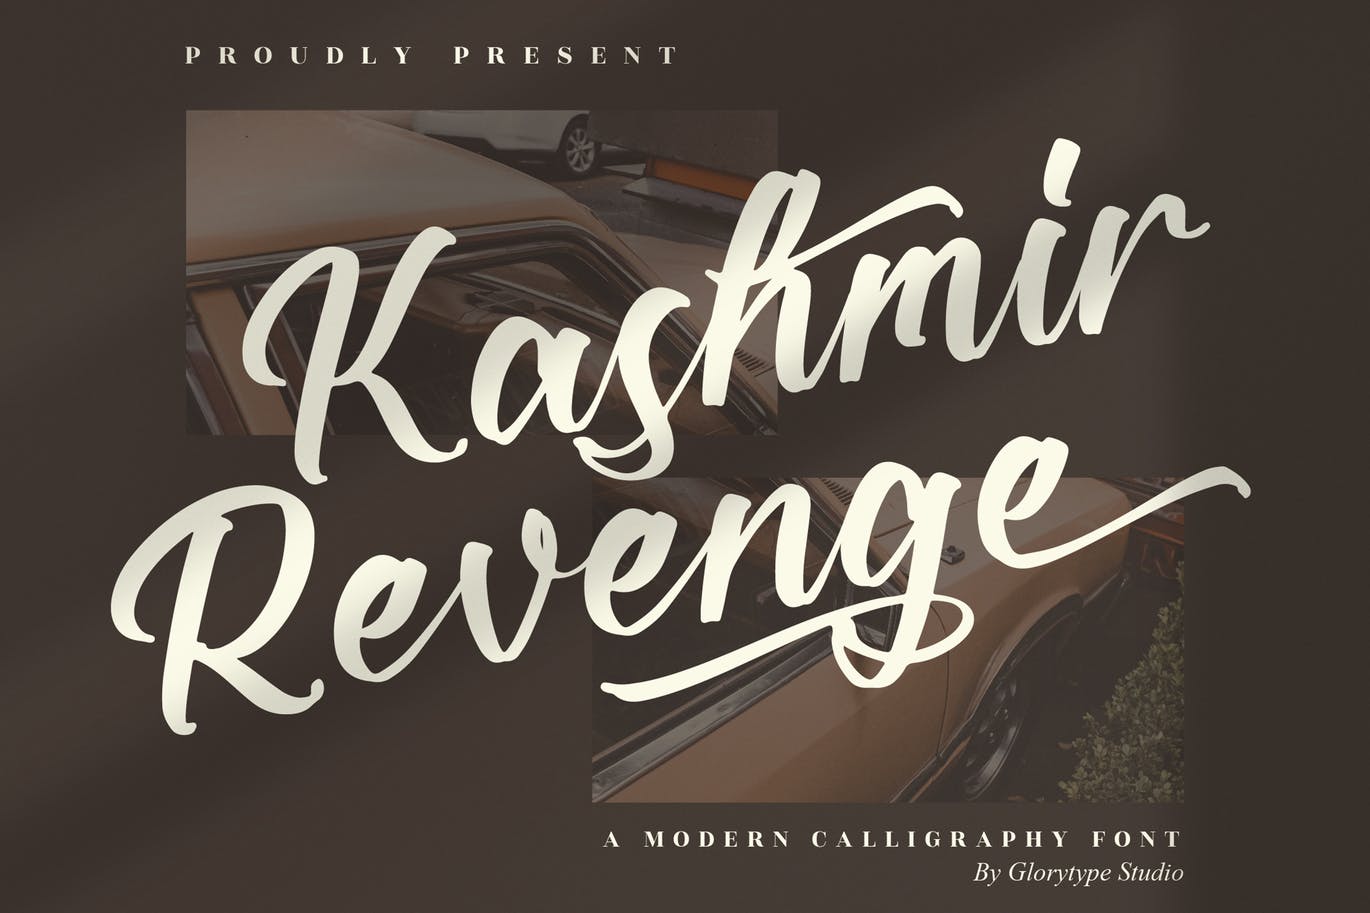 现代艺术书法字体素材 Kashmir Revenge Calligraphy Font 设计素材 第1张